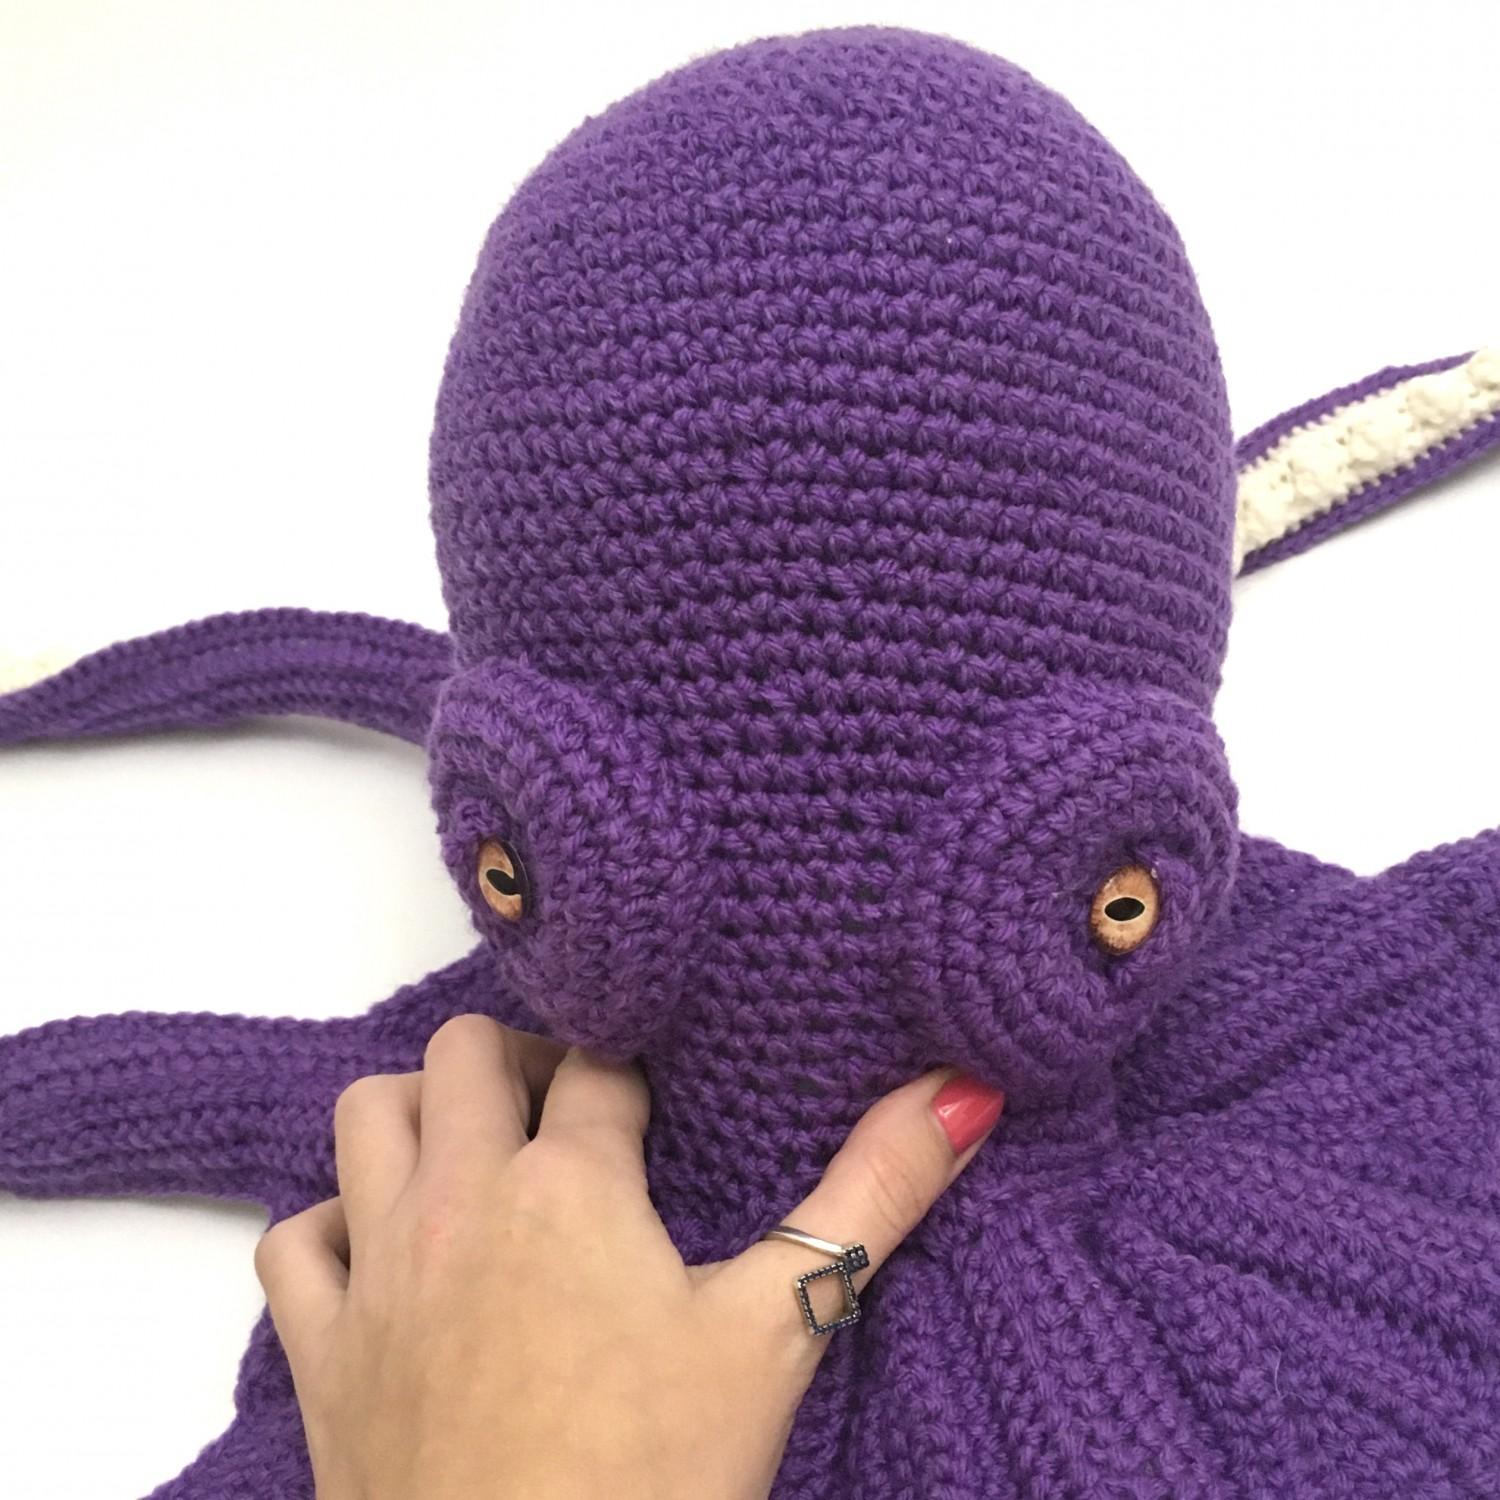 Amigurumi sea creature, crochet sea animal, large stuffed octopus purple